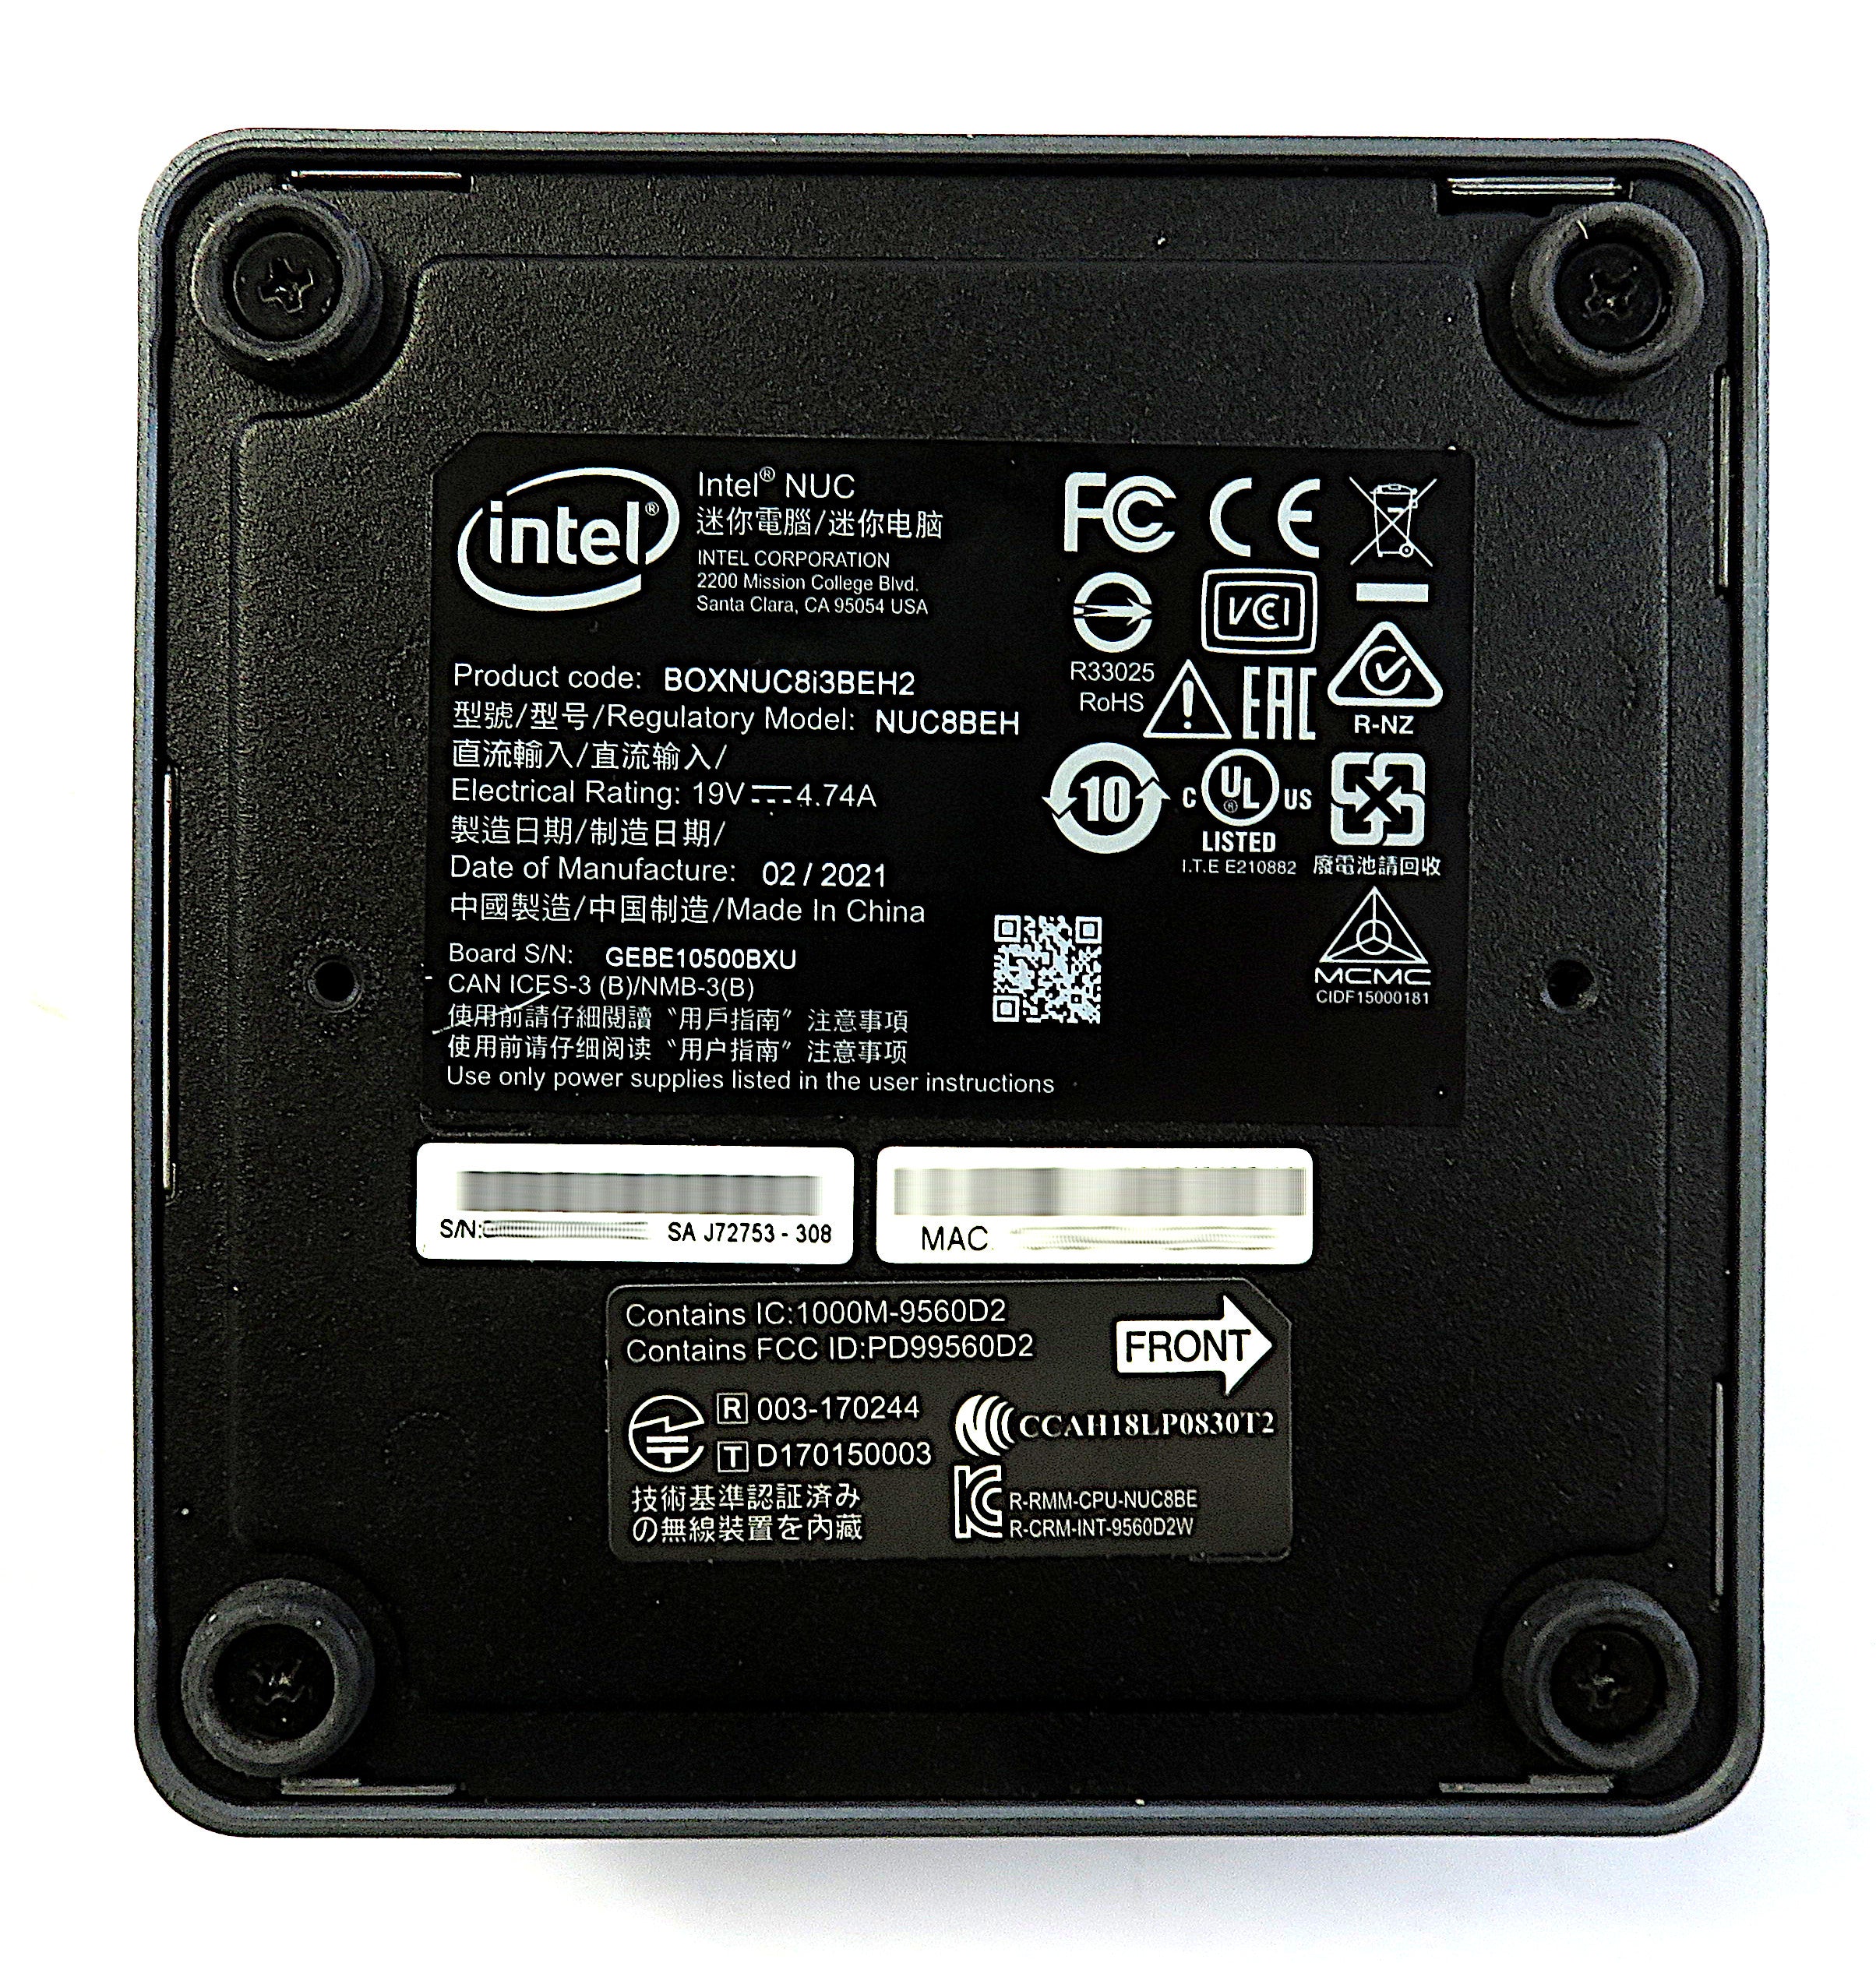 Intel NUC8i3BEH PC, i3-8109U CPU, 16GB RAM, 256GB NVMe, 512GB SSD